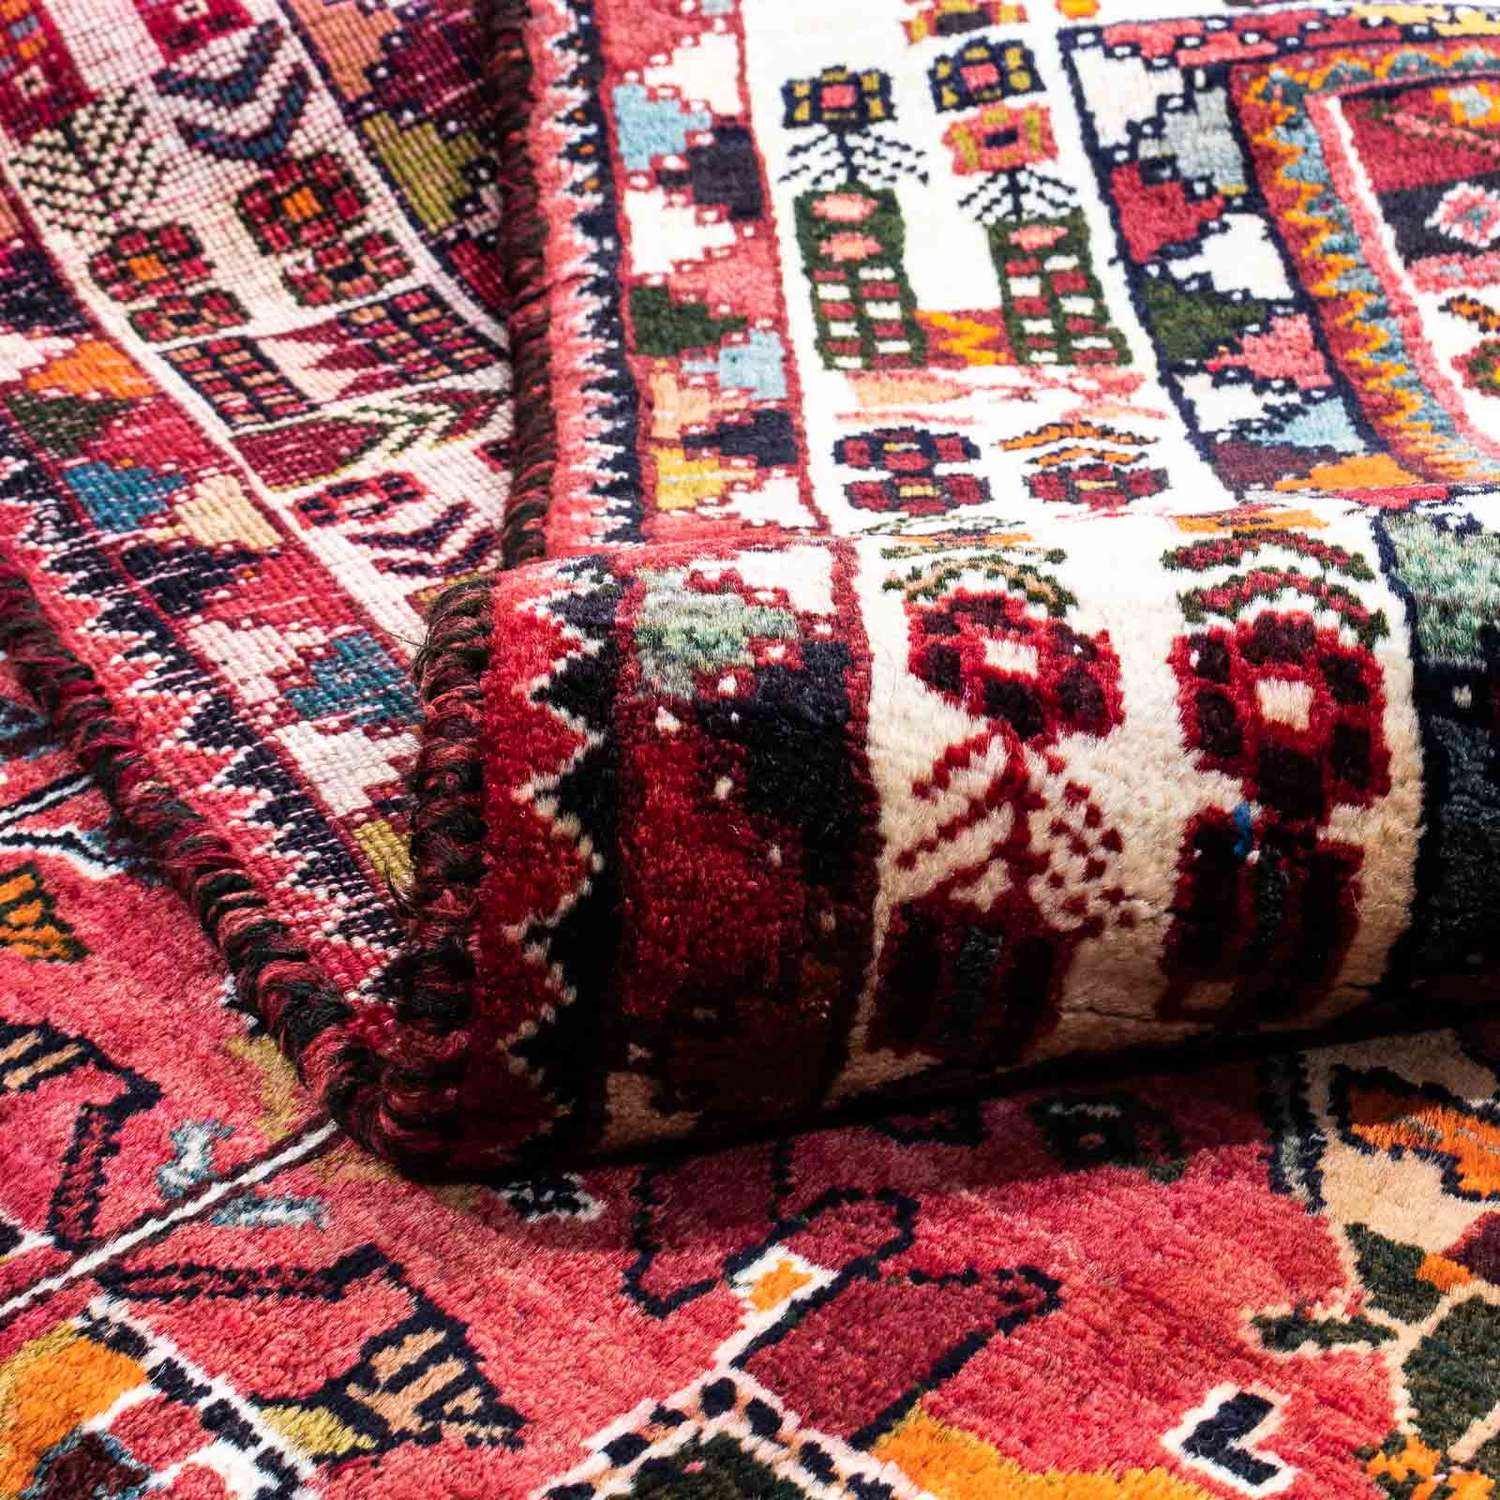 Perski dywan - Nomadyczny - 255 x 175 cm - ciemna czerwień